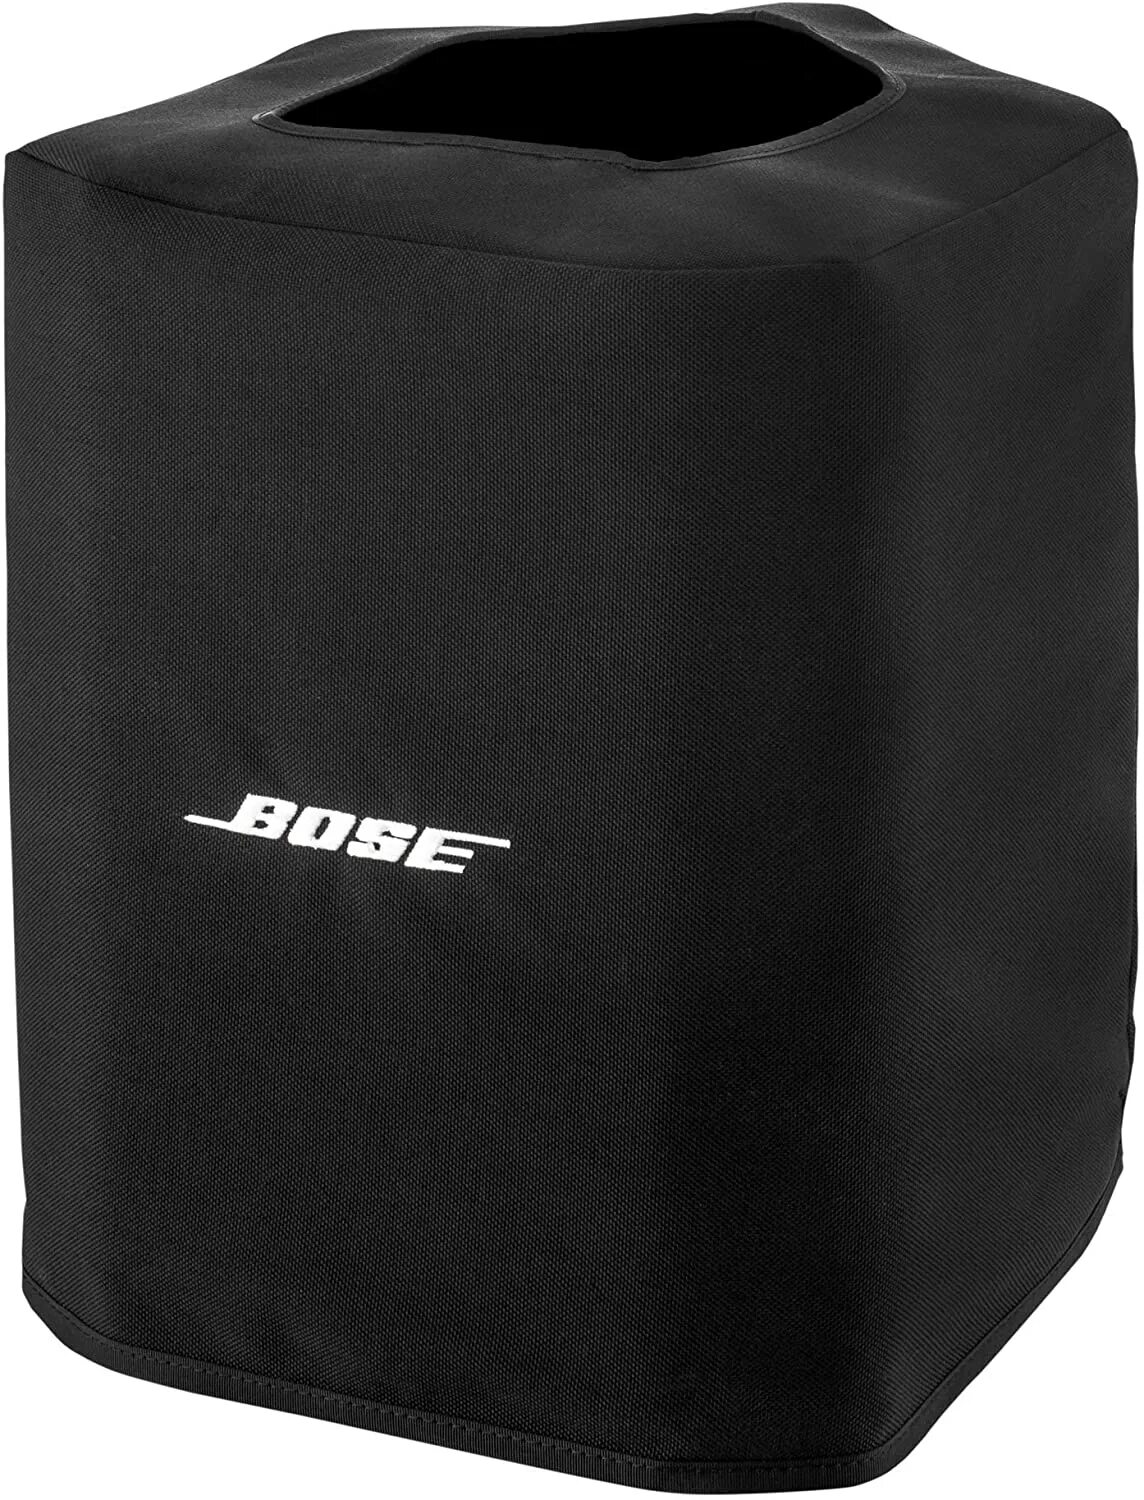 Bose s1. Bose s1 Pro чехол. Bose s1 Pro. Колонка Bose s1 Pro. Bose s1 Pro Slip Case.